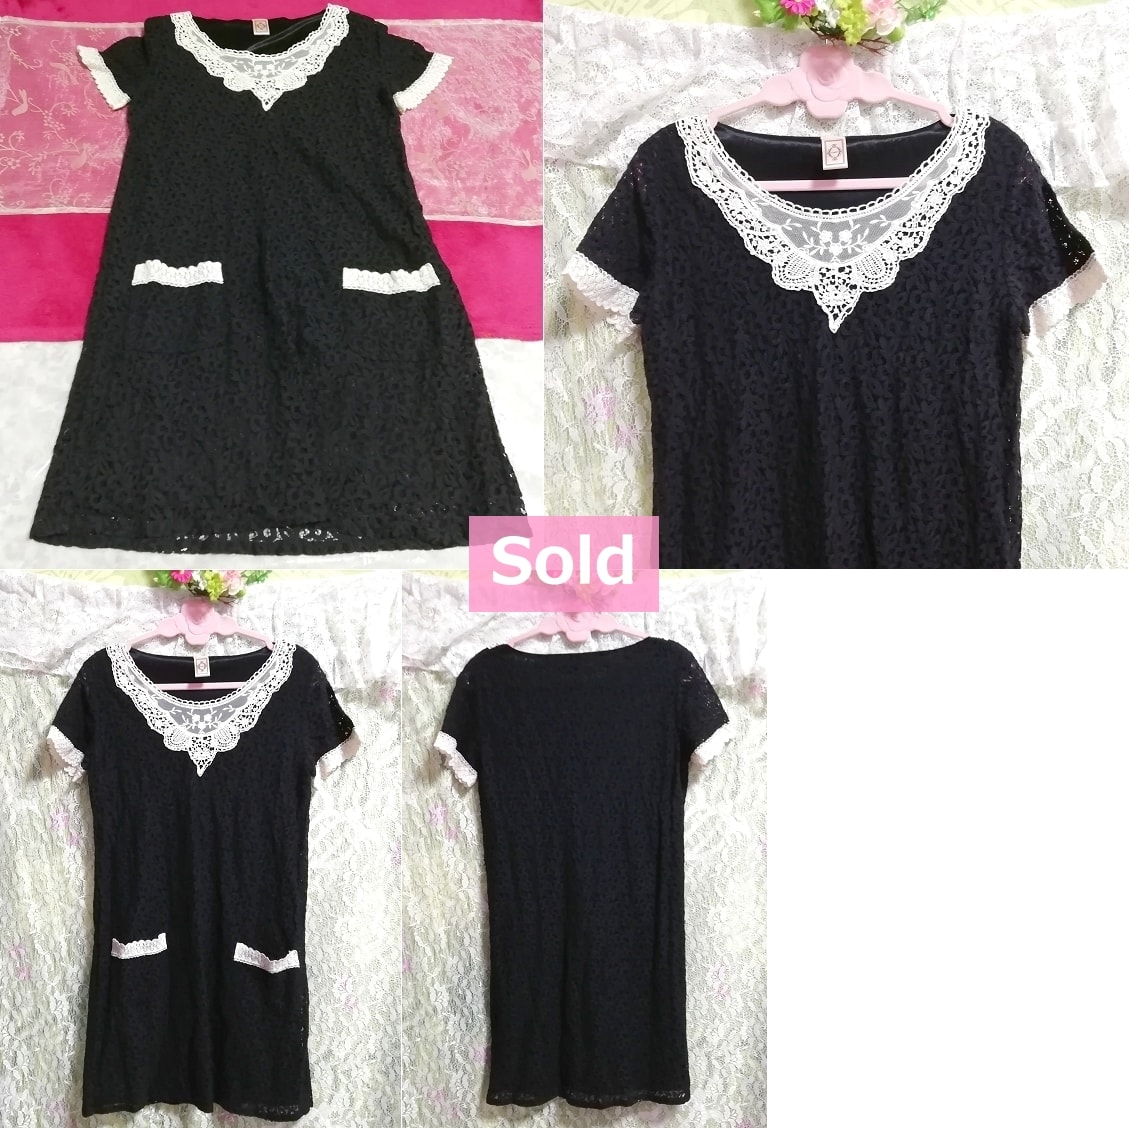 Black chiffon white lace short sleeve negligee tunic dress, tunic & short sleeve & medium size